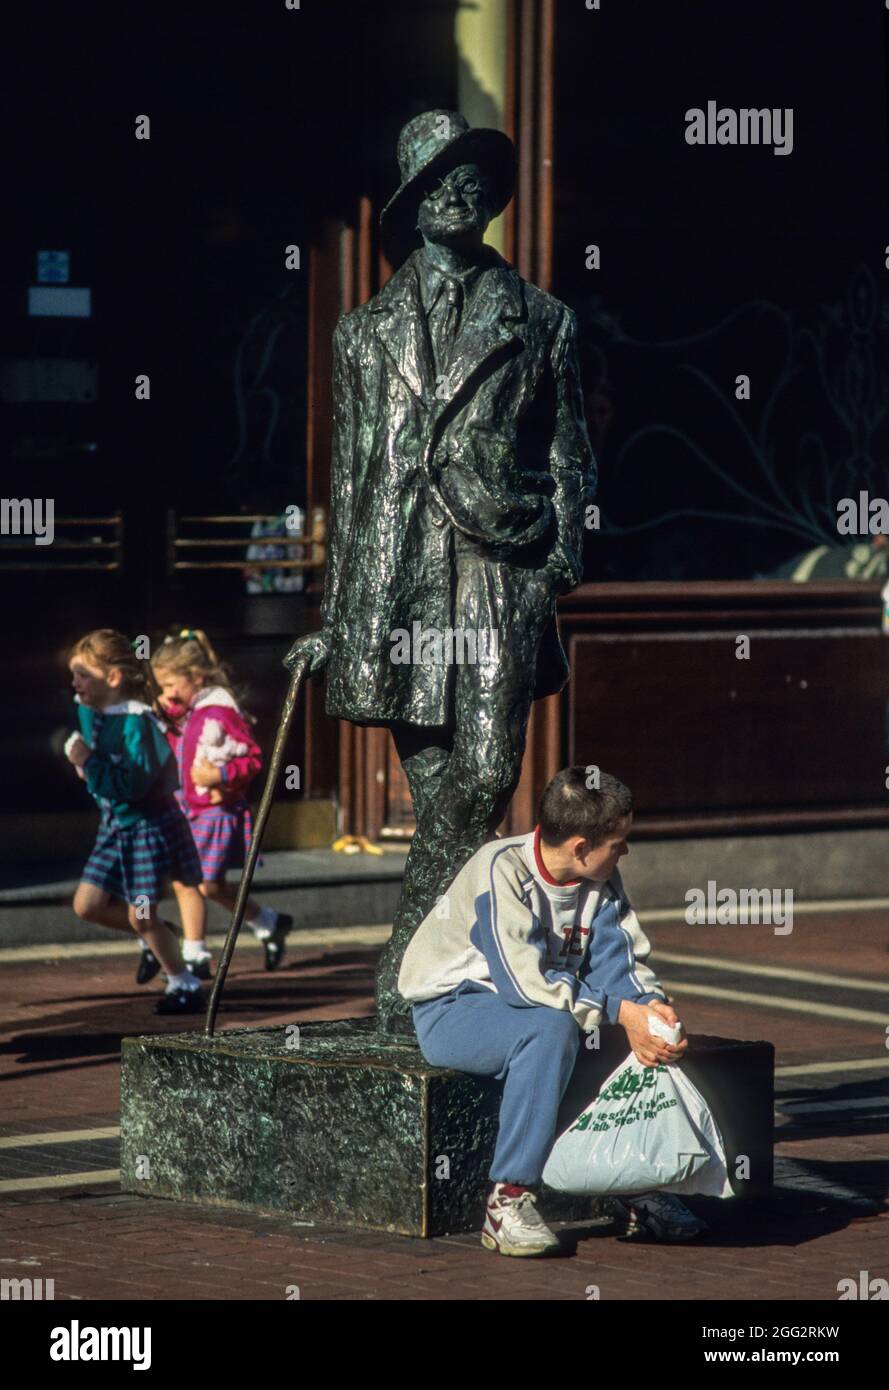 James Joyce als Statue vor dem bekannten Cafe Kylemore in der Fußgängerzone von Dublin. - James Joice statue in front of famous Cafe Kylemore in Dublin centre Stock Photo